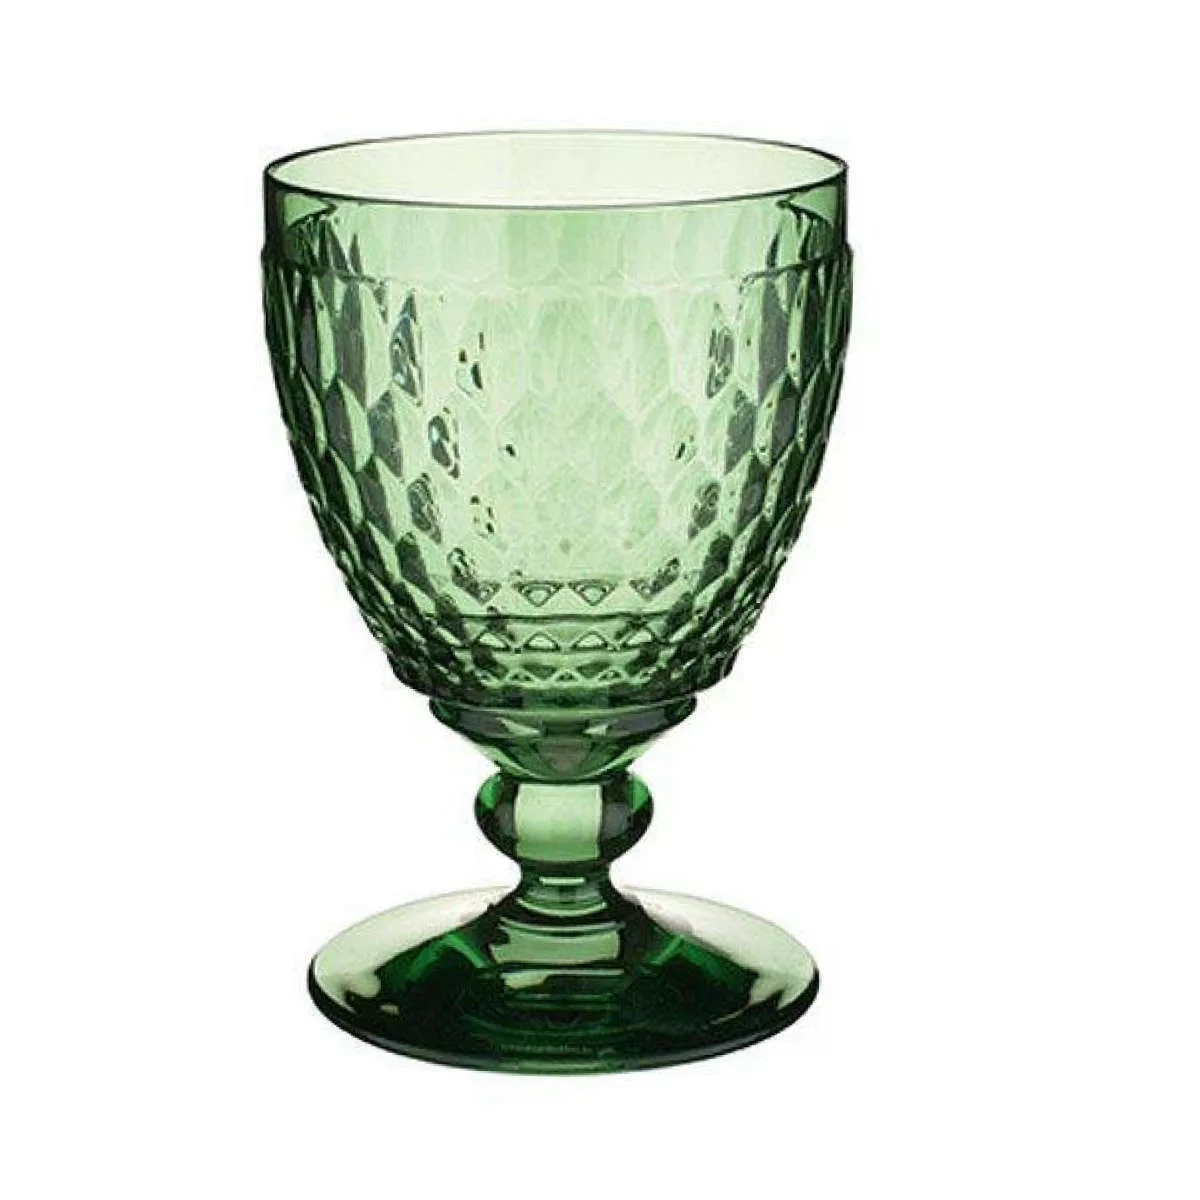 Villeroy & Boch Rotwein Boston coloured Rotweinglas green 0,31 l (grün) günstig online kaufen